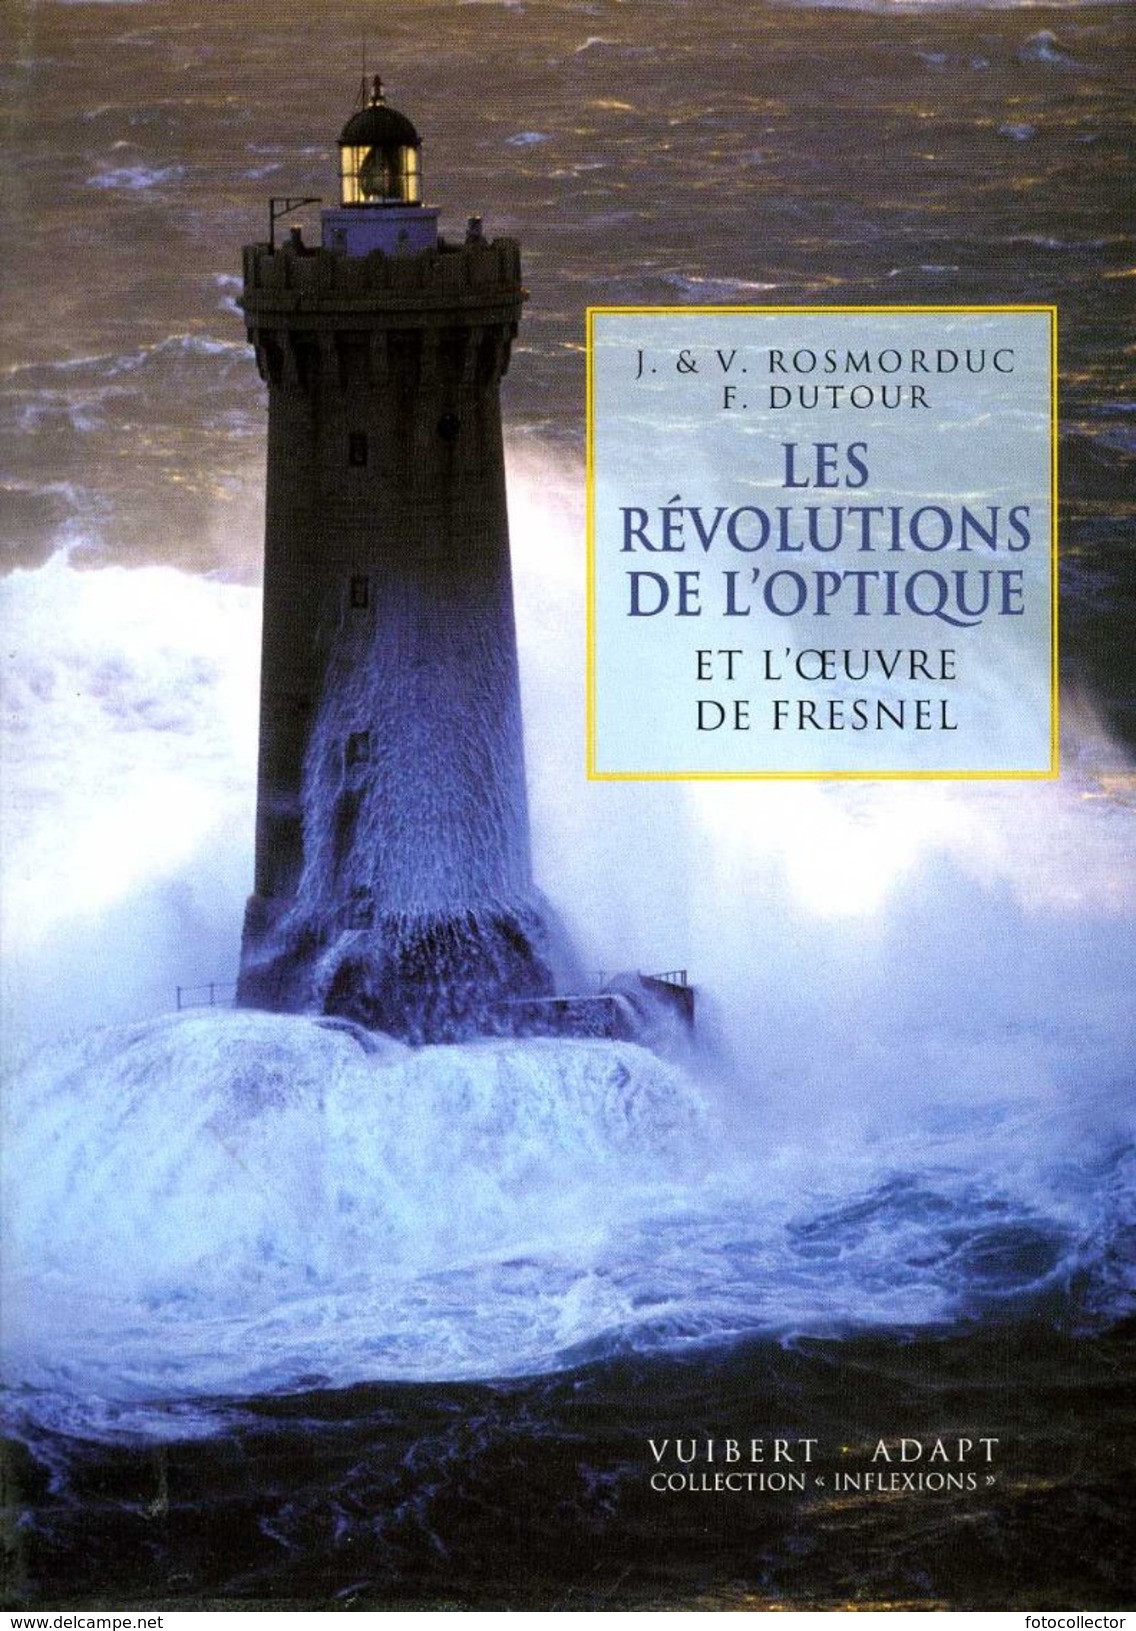 Les Révolutions De L'optique Et L'oeuvre De Fresnel Par Dutour Et Rosmorduc (ISBN 2711753646 EAN 9782711753642) - Sciences